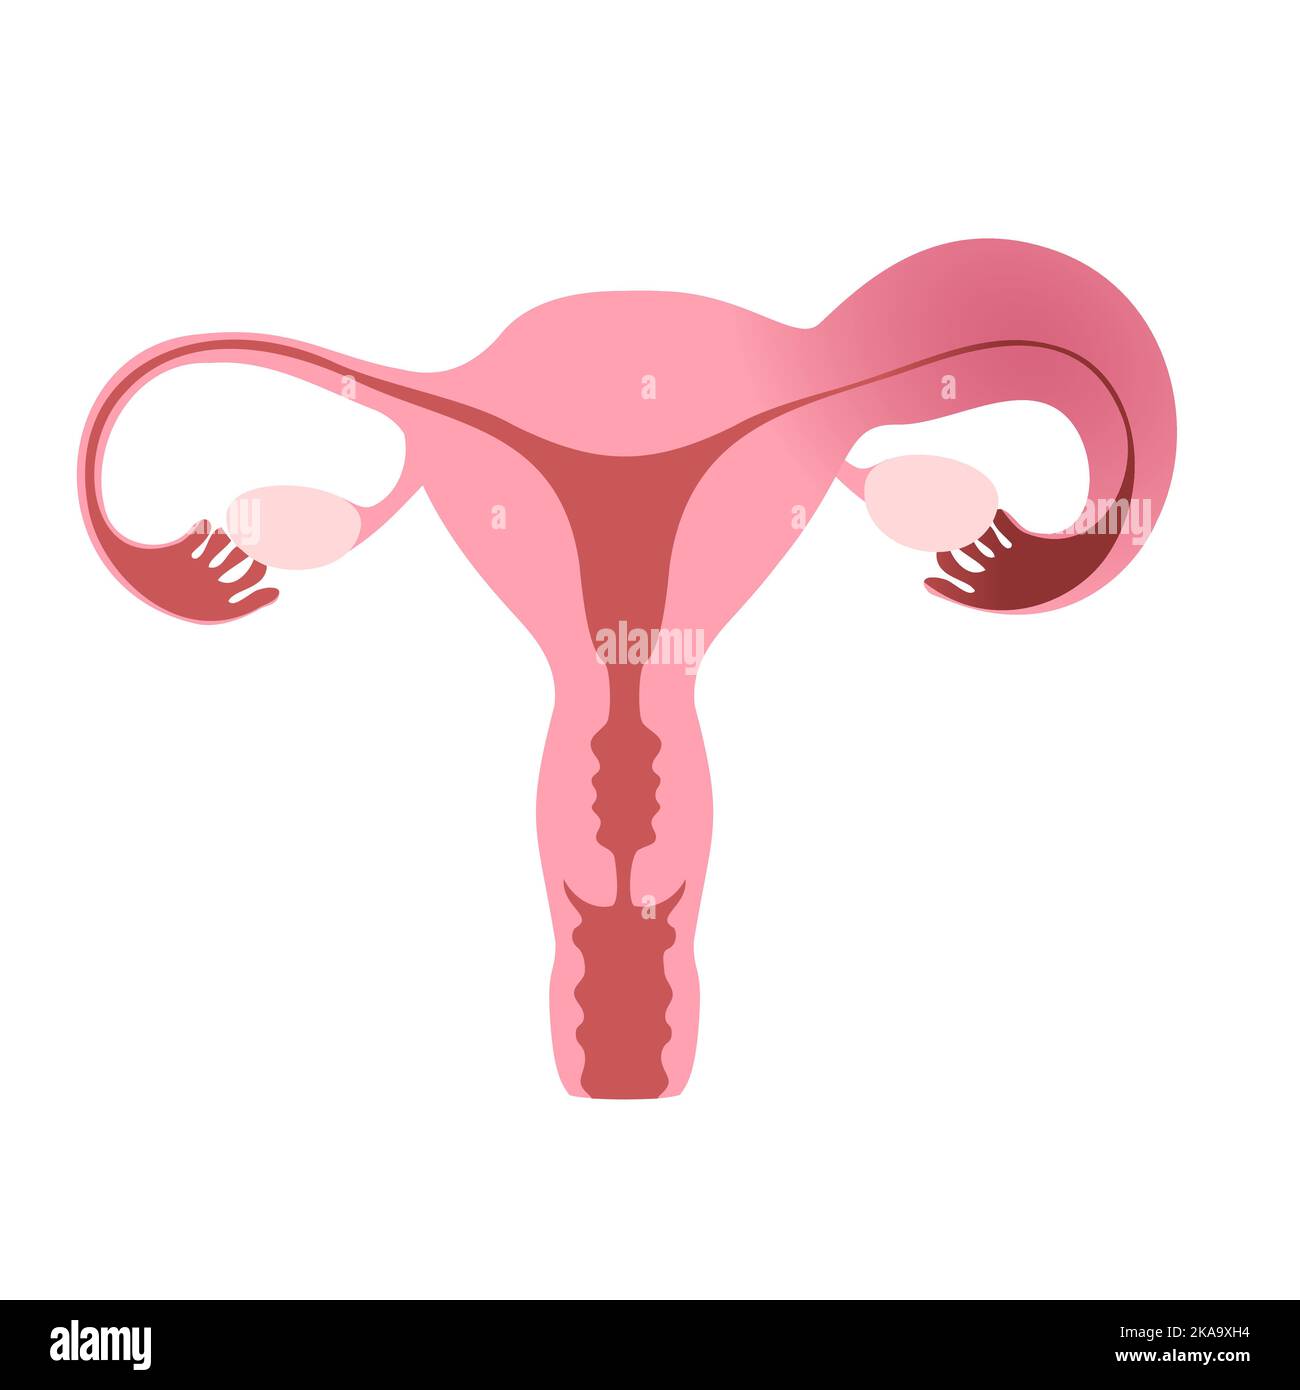 Illustrazione piatta dell'utero umano che dimostra un tubo di Falloppio sano ed uno infiammato. Illustrazione Vettoriale